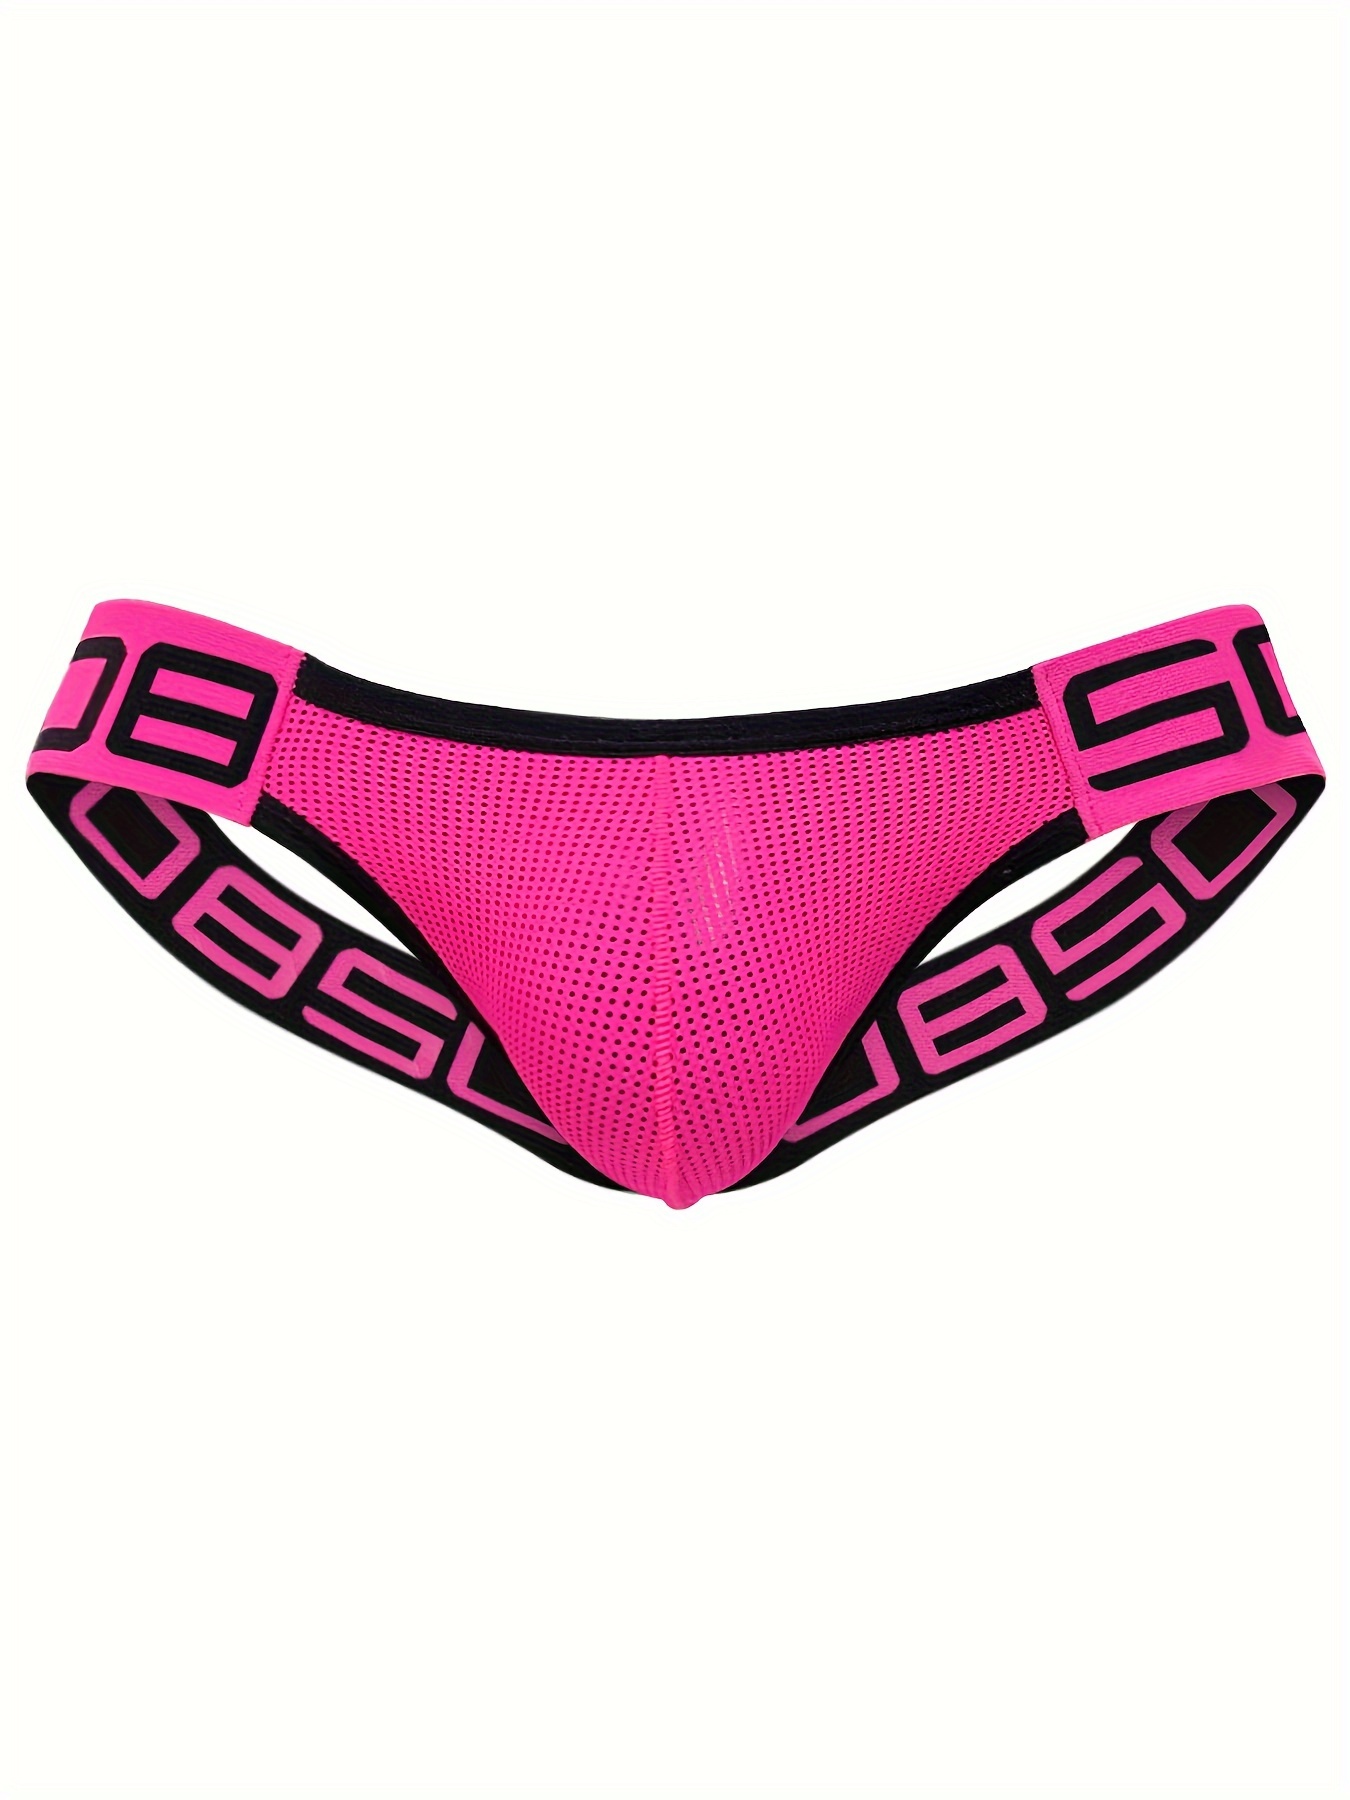 Pink Greca Thong by Versace Underwear on Sale